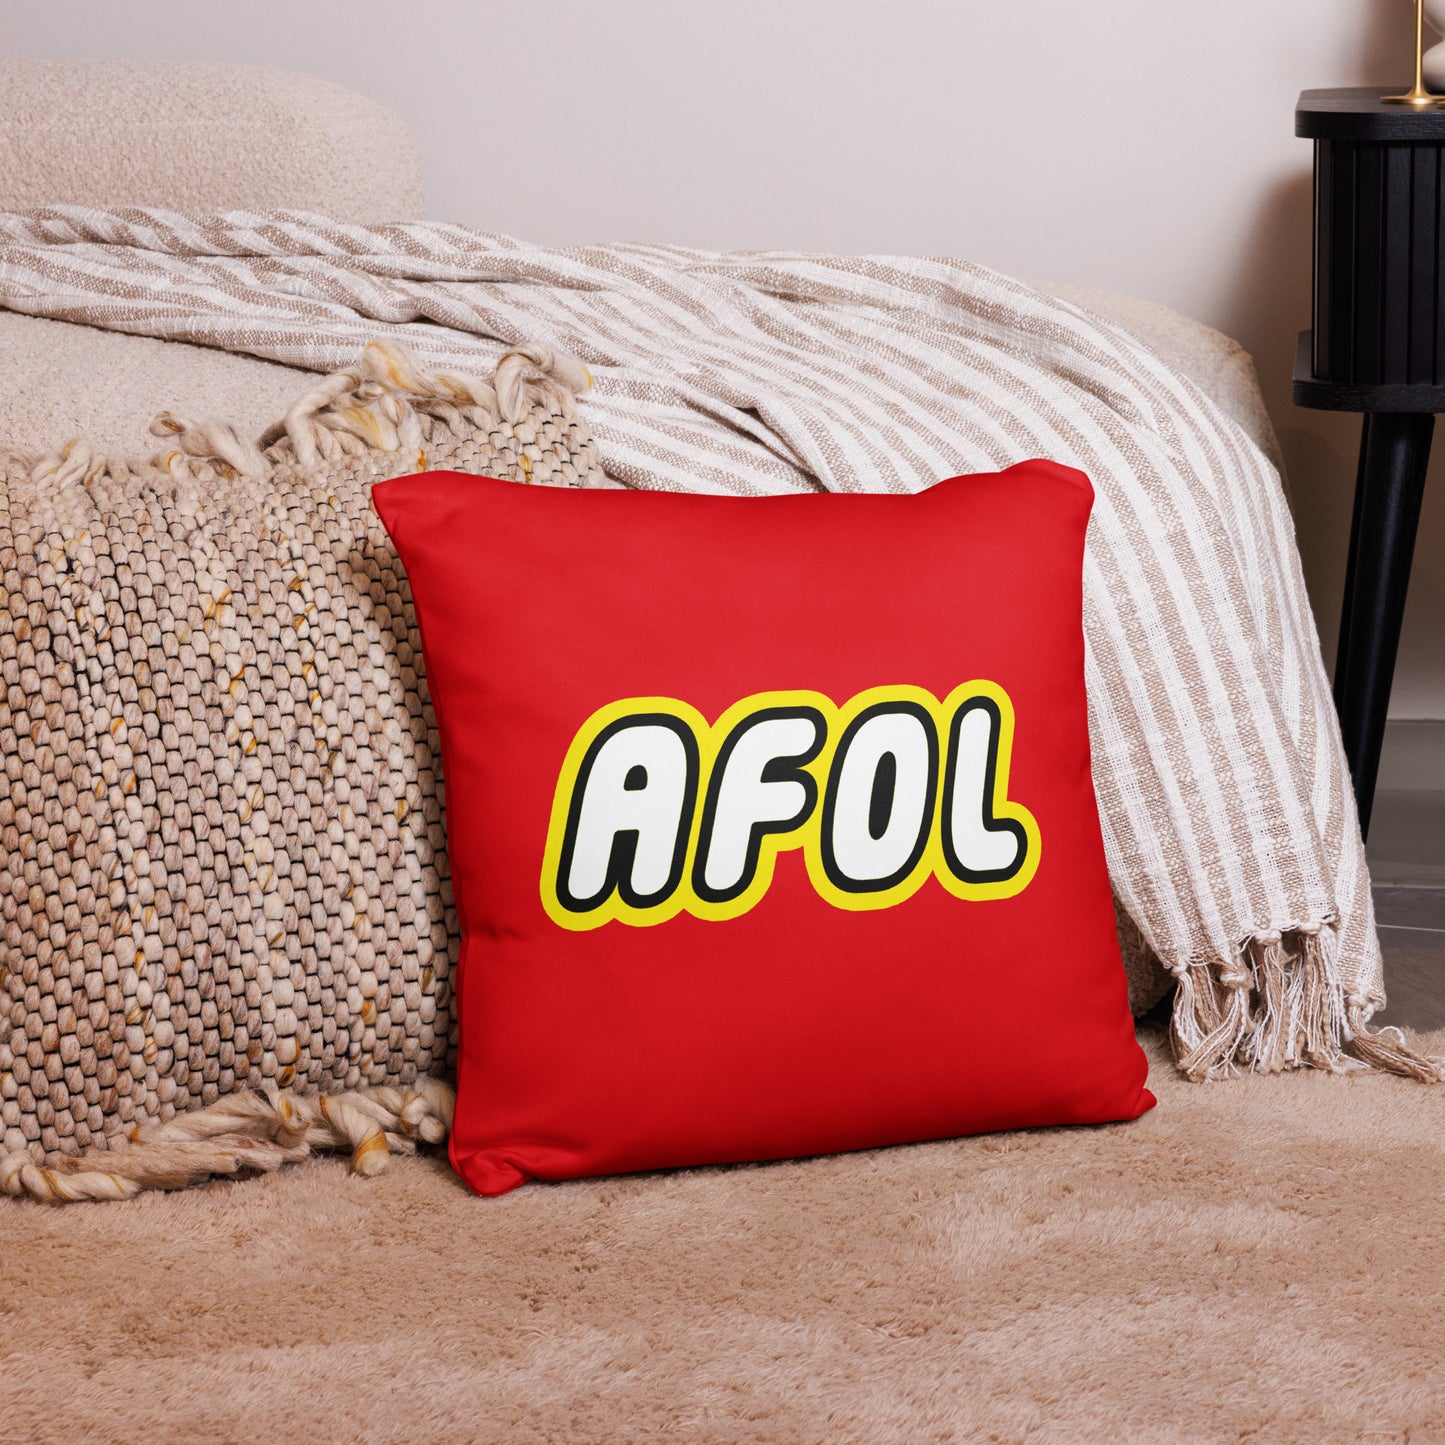 AFOL (Adult Fan of Lego) 18" x 18" Pillow